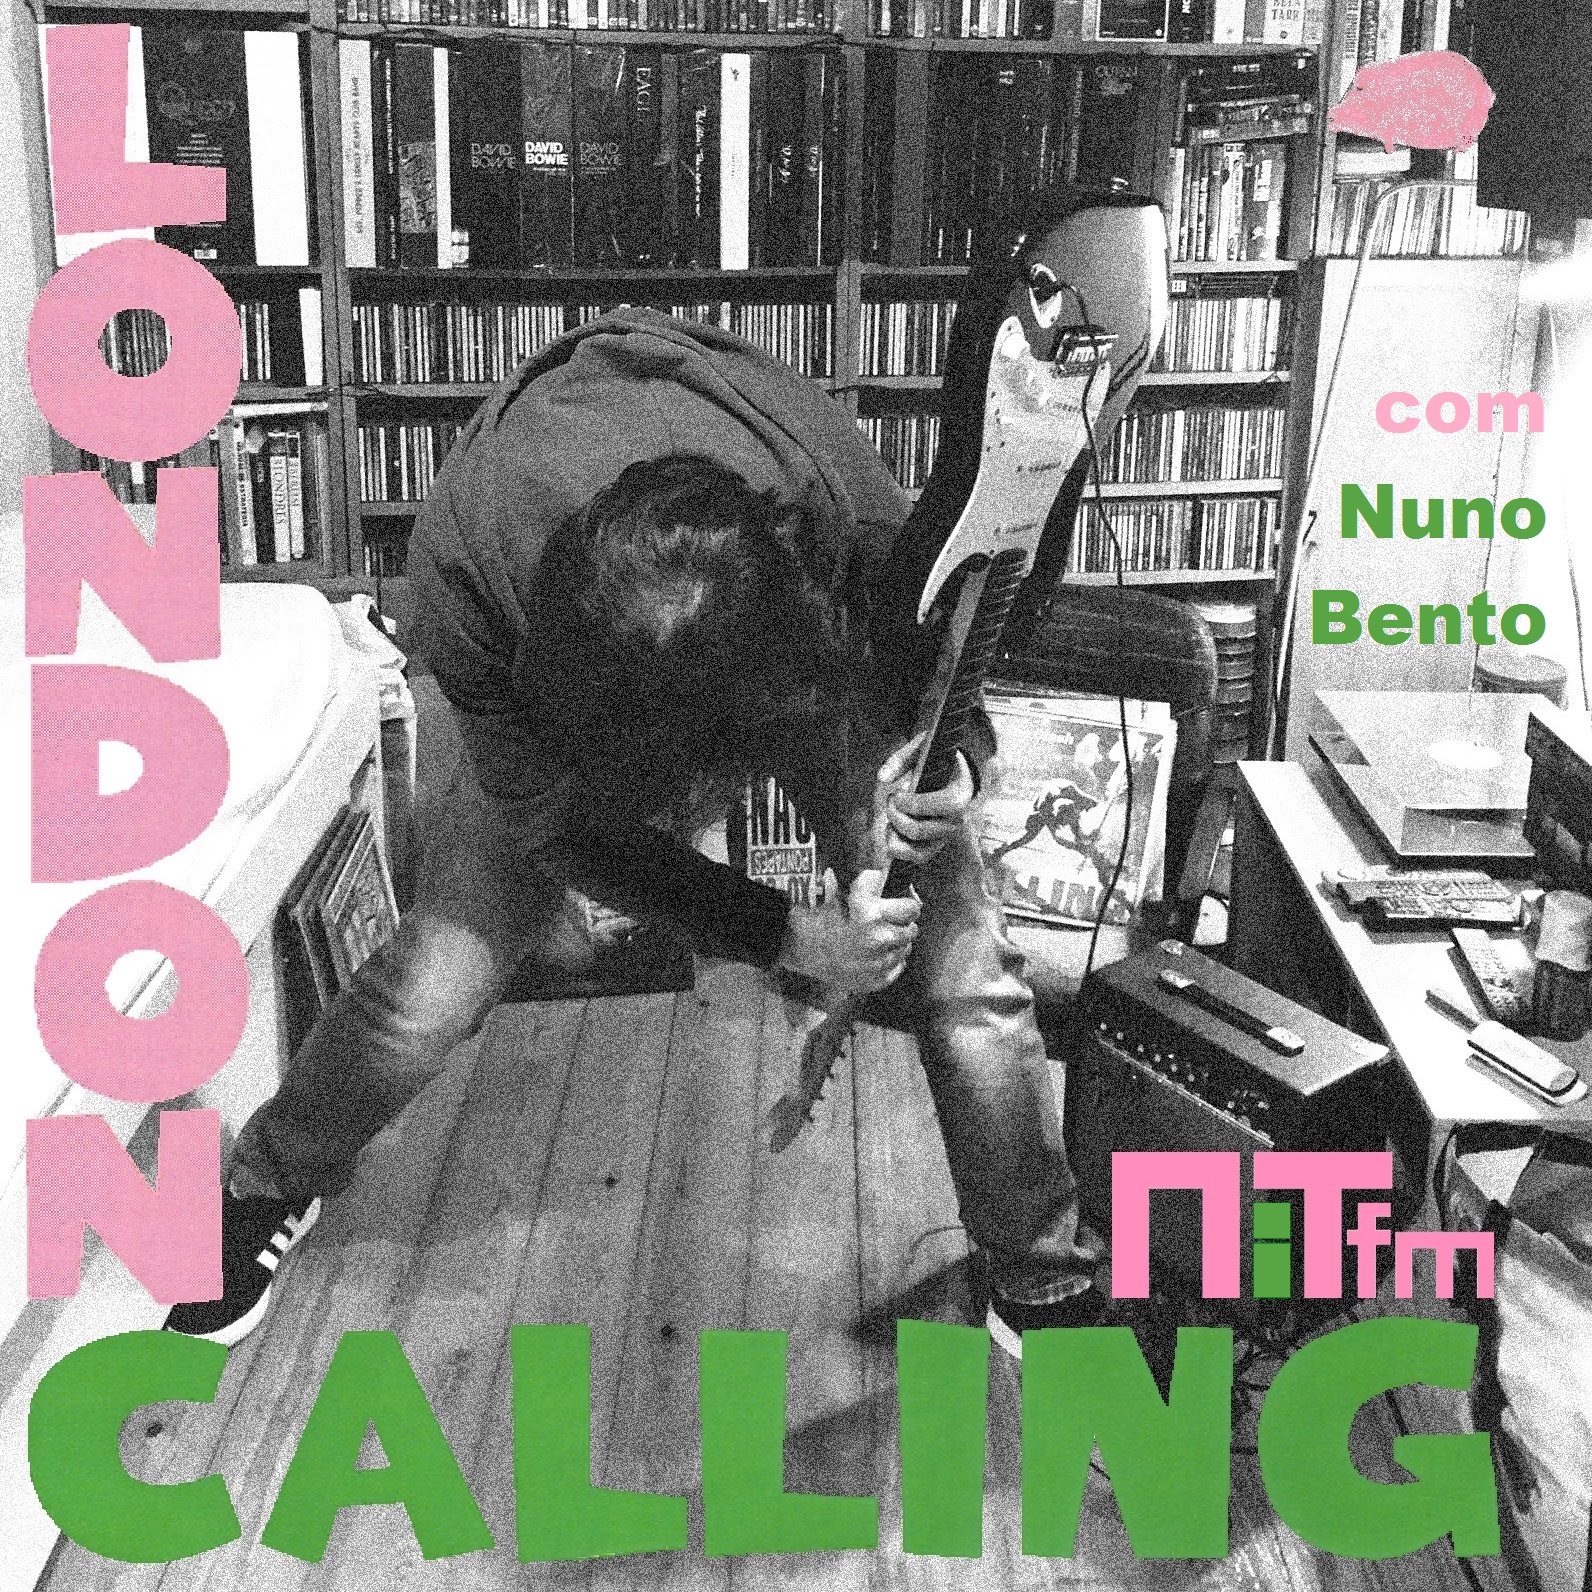 London Calling: SophistiPop